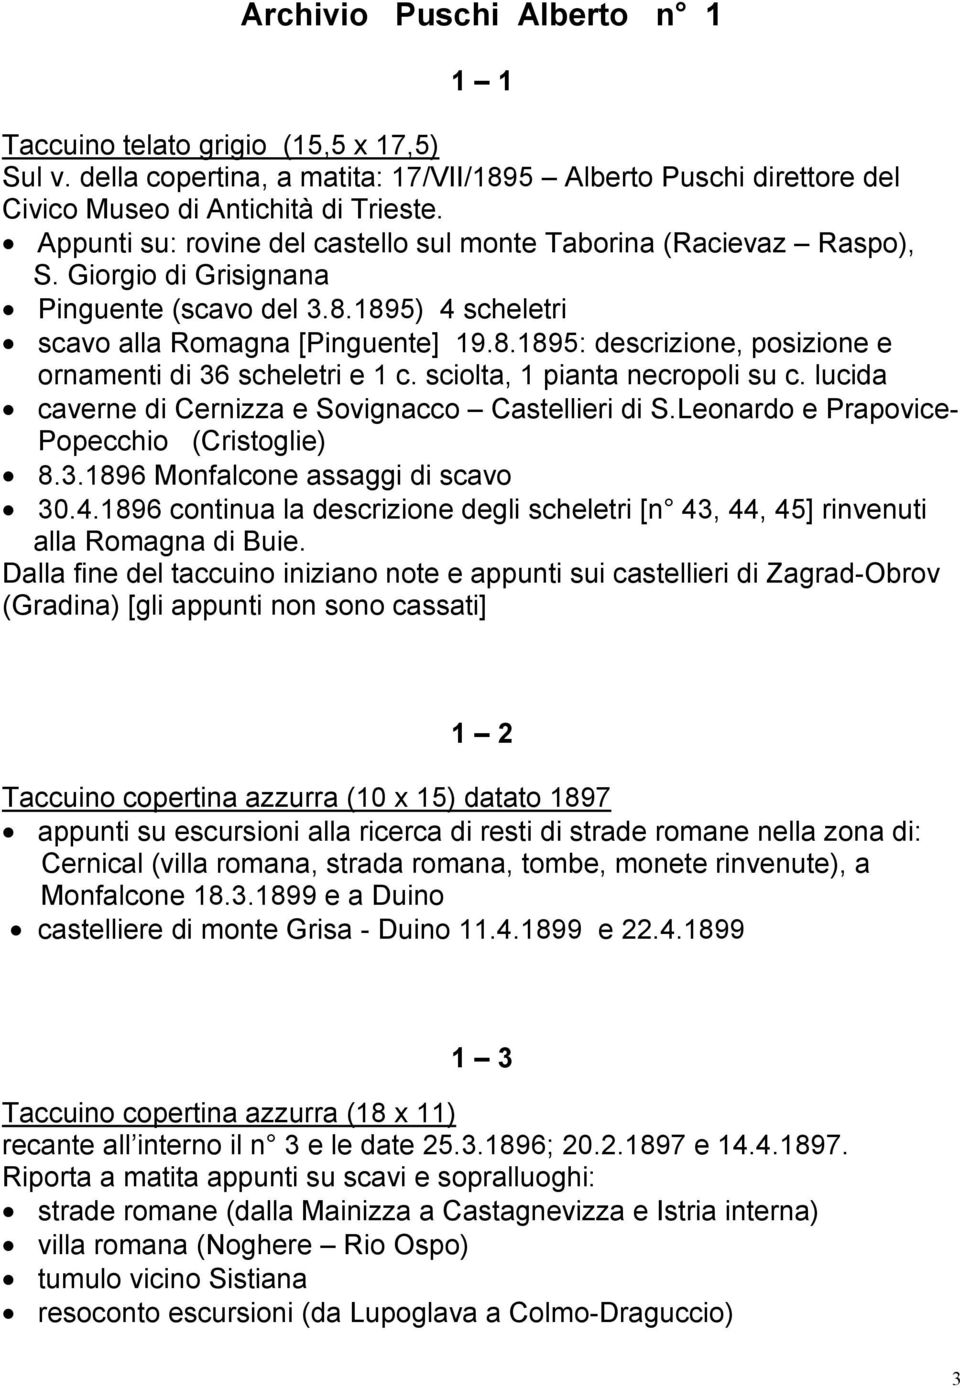 sciolta, 1 pianta necropoli su c. lucida caverne di Cernizza e Sovignacco Castellieri di S.Leonardo e Prapovice- Popecchio (Cristoglie) 8.3.1896 Monfalcone assaggi di scavo 30.4.